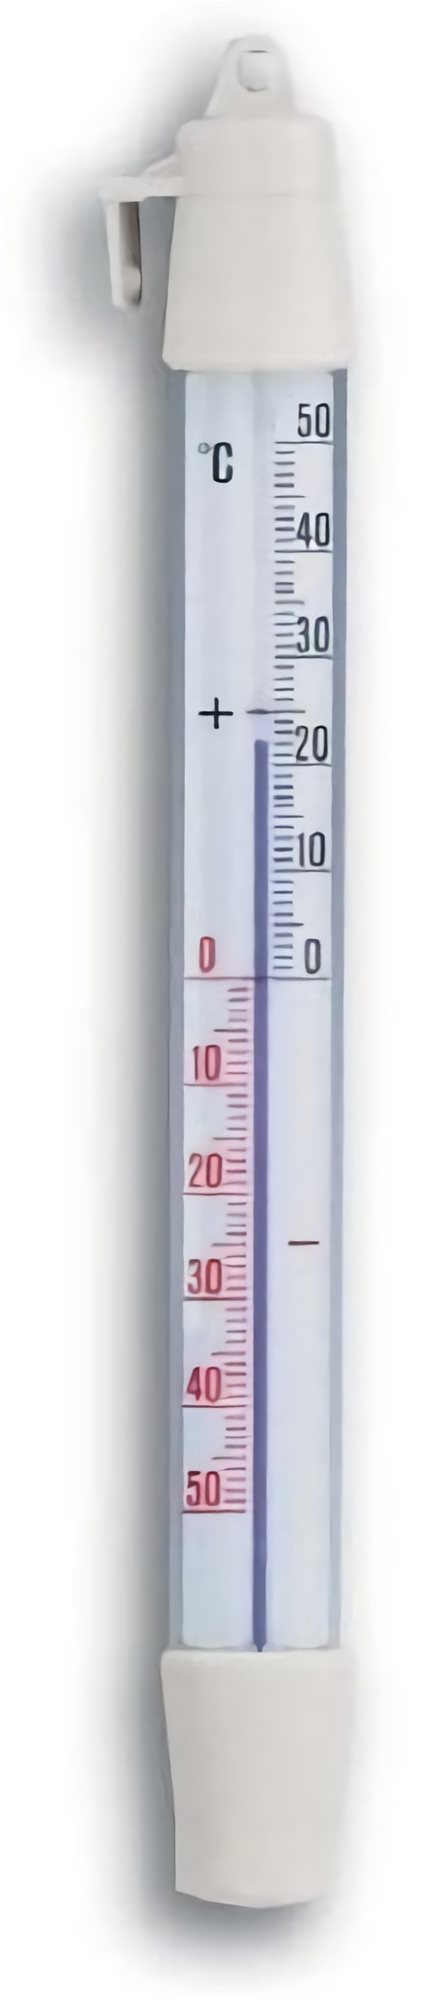 TFA 14 . 4003.02.98 – Folyadékos hőmérő hűtőszekrénybe/fagyasztóba